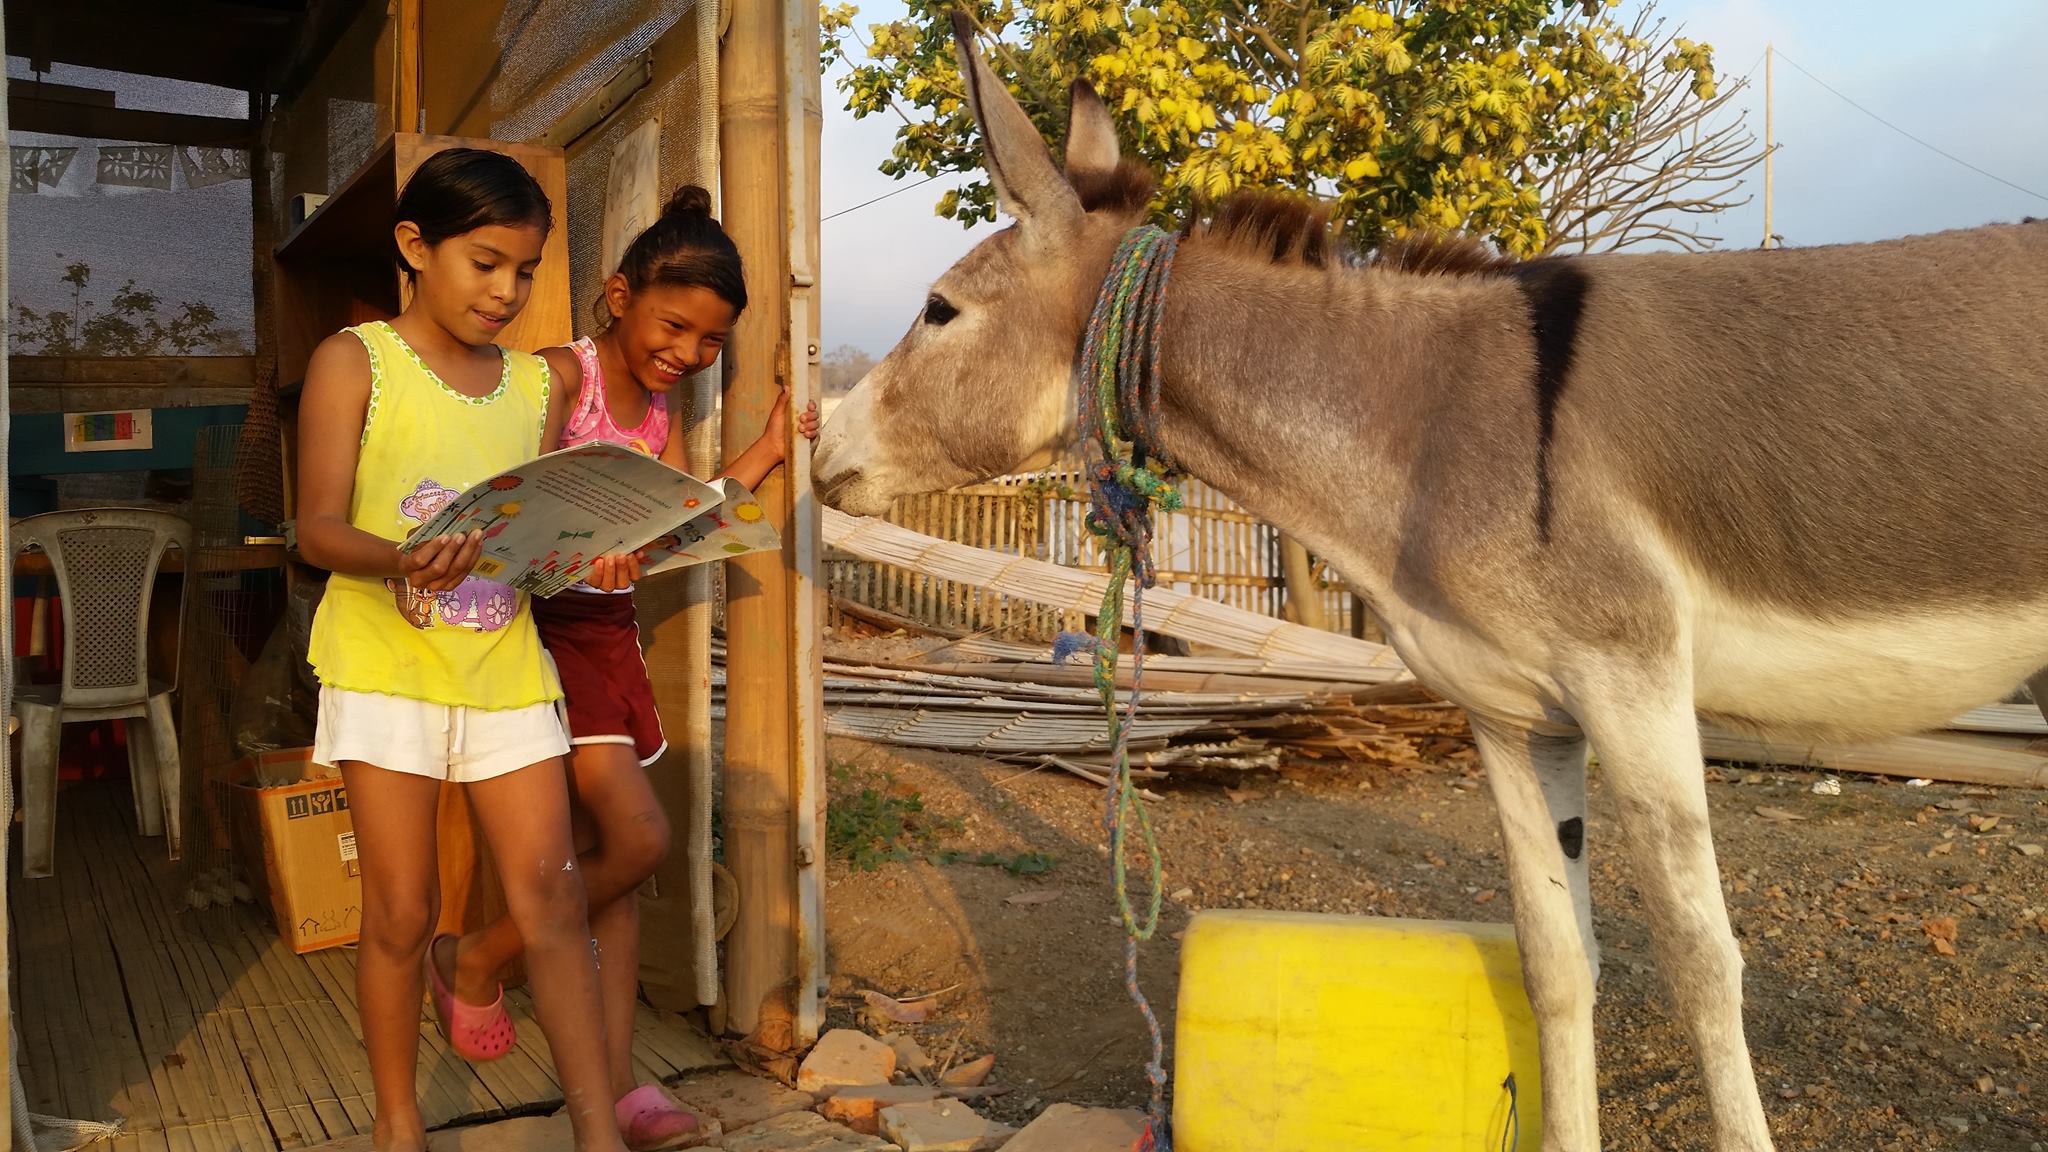 APOYO. El burro de la Fundación, llamado Domingo, aporta a la biblioteca llevando textos.